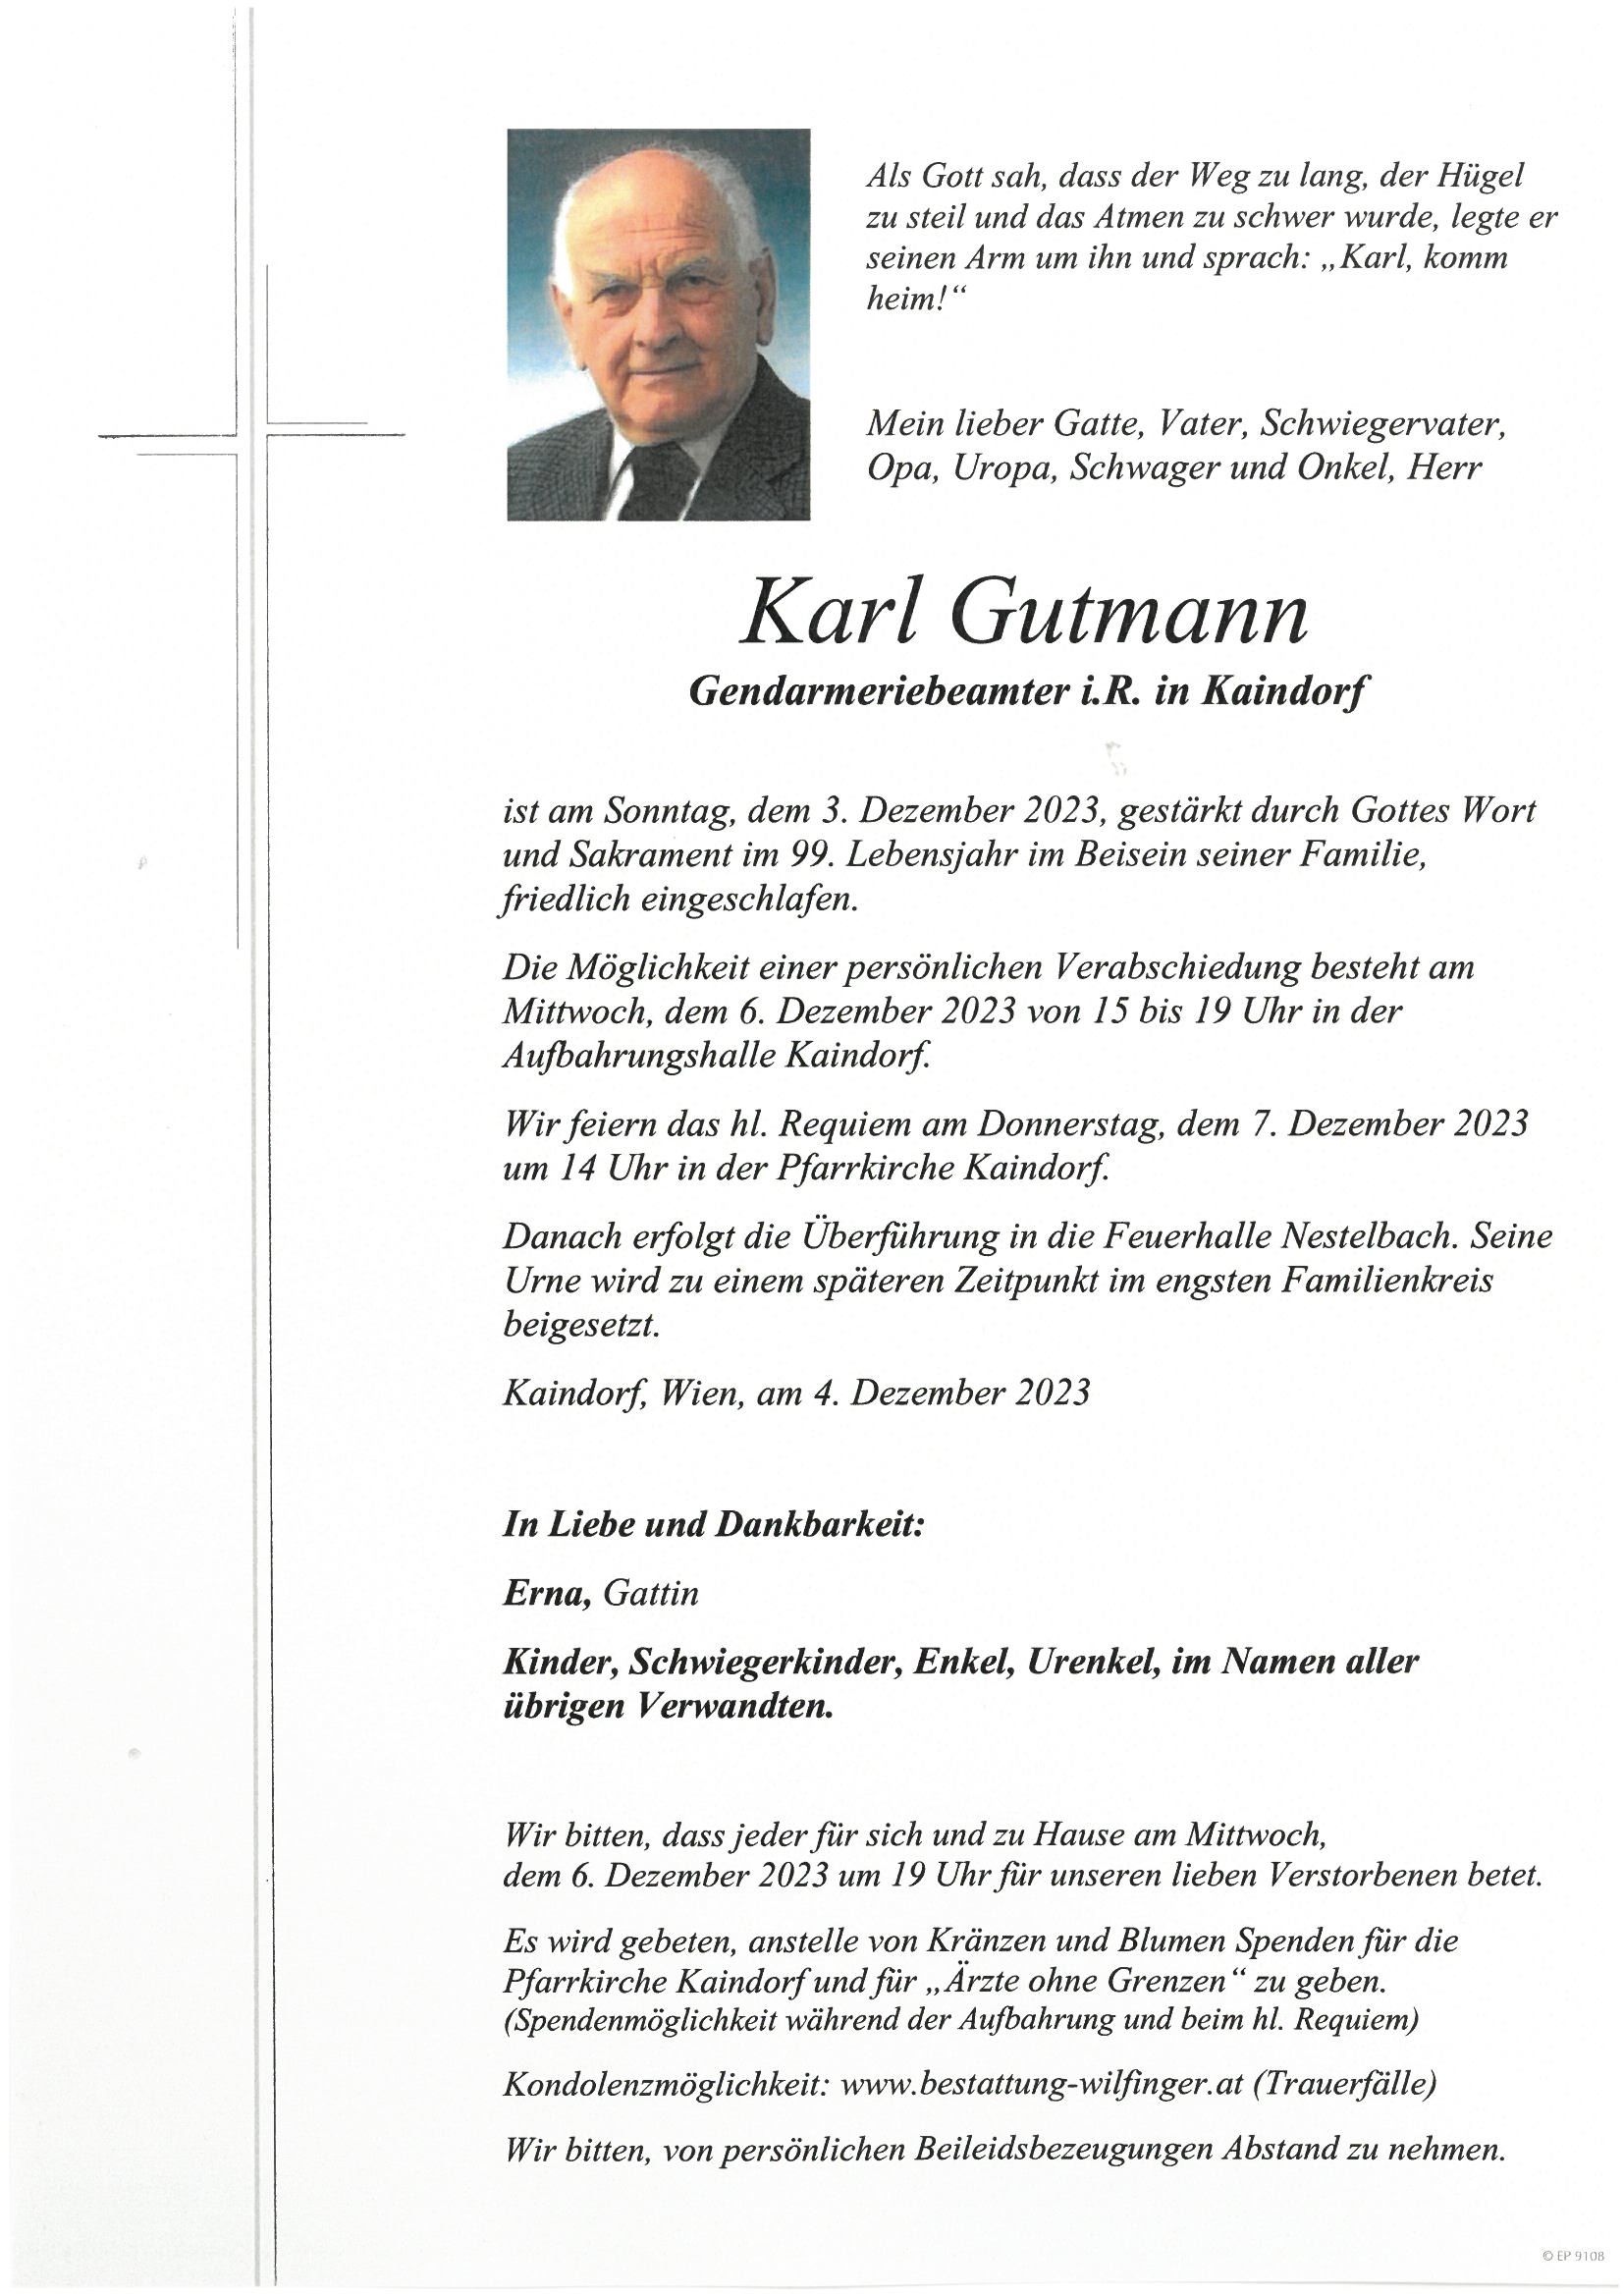 Karl Gutmann, Kaindorf